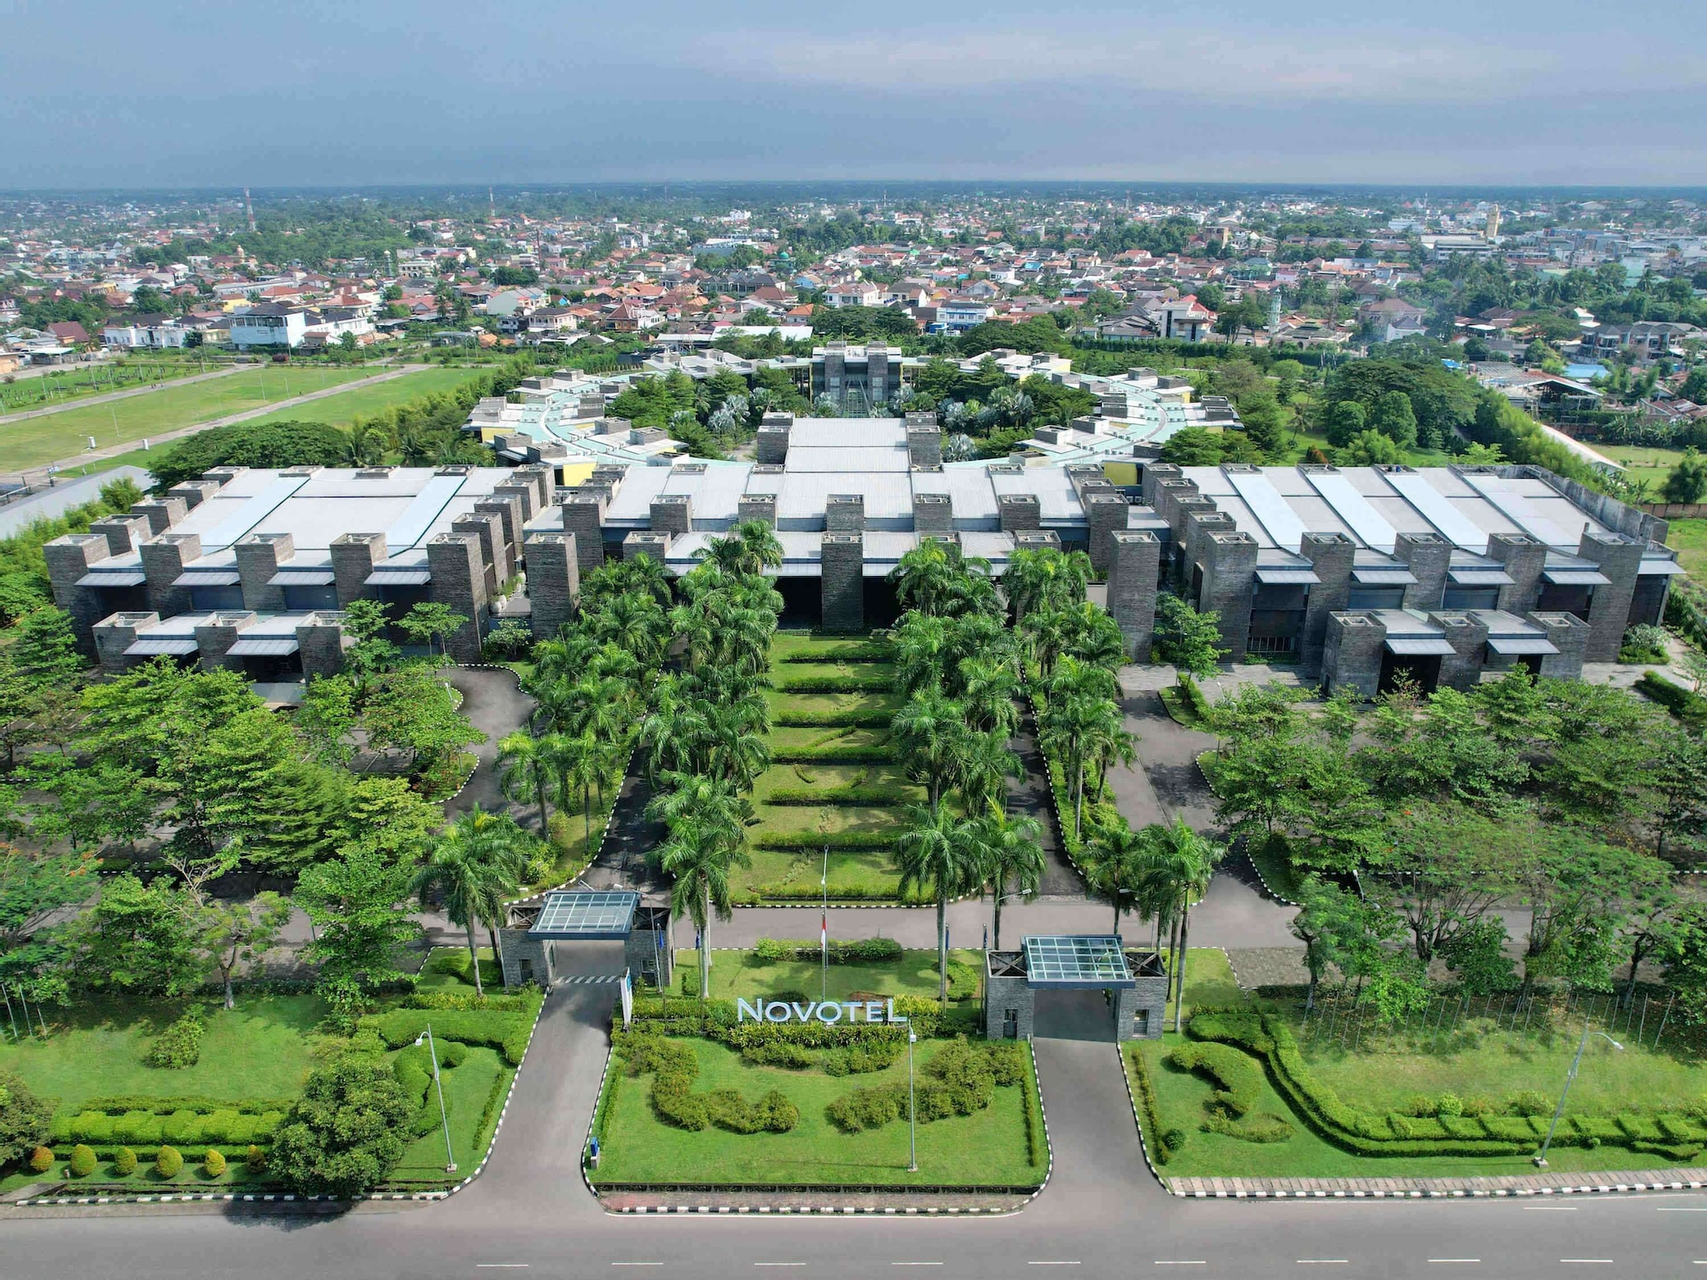 Exterior & Views 1, Novotel Palembang Hotel & Residence, Palembang